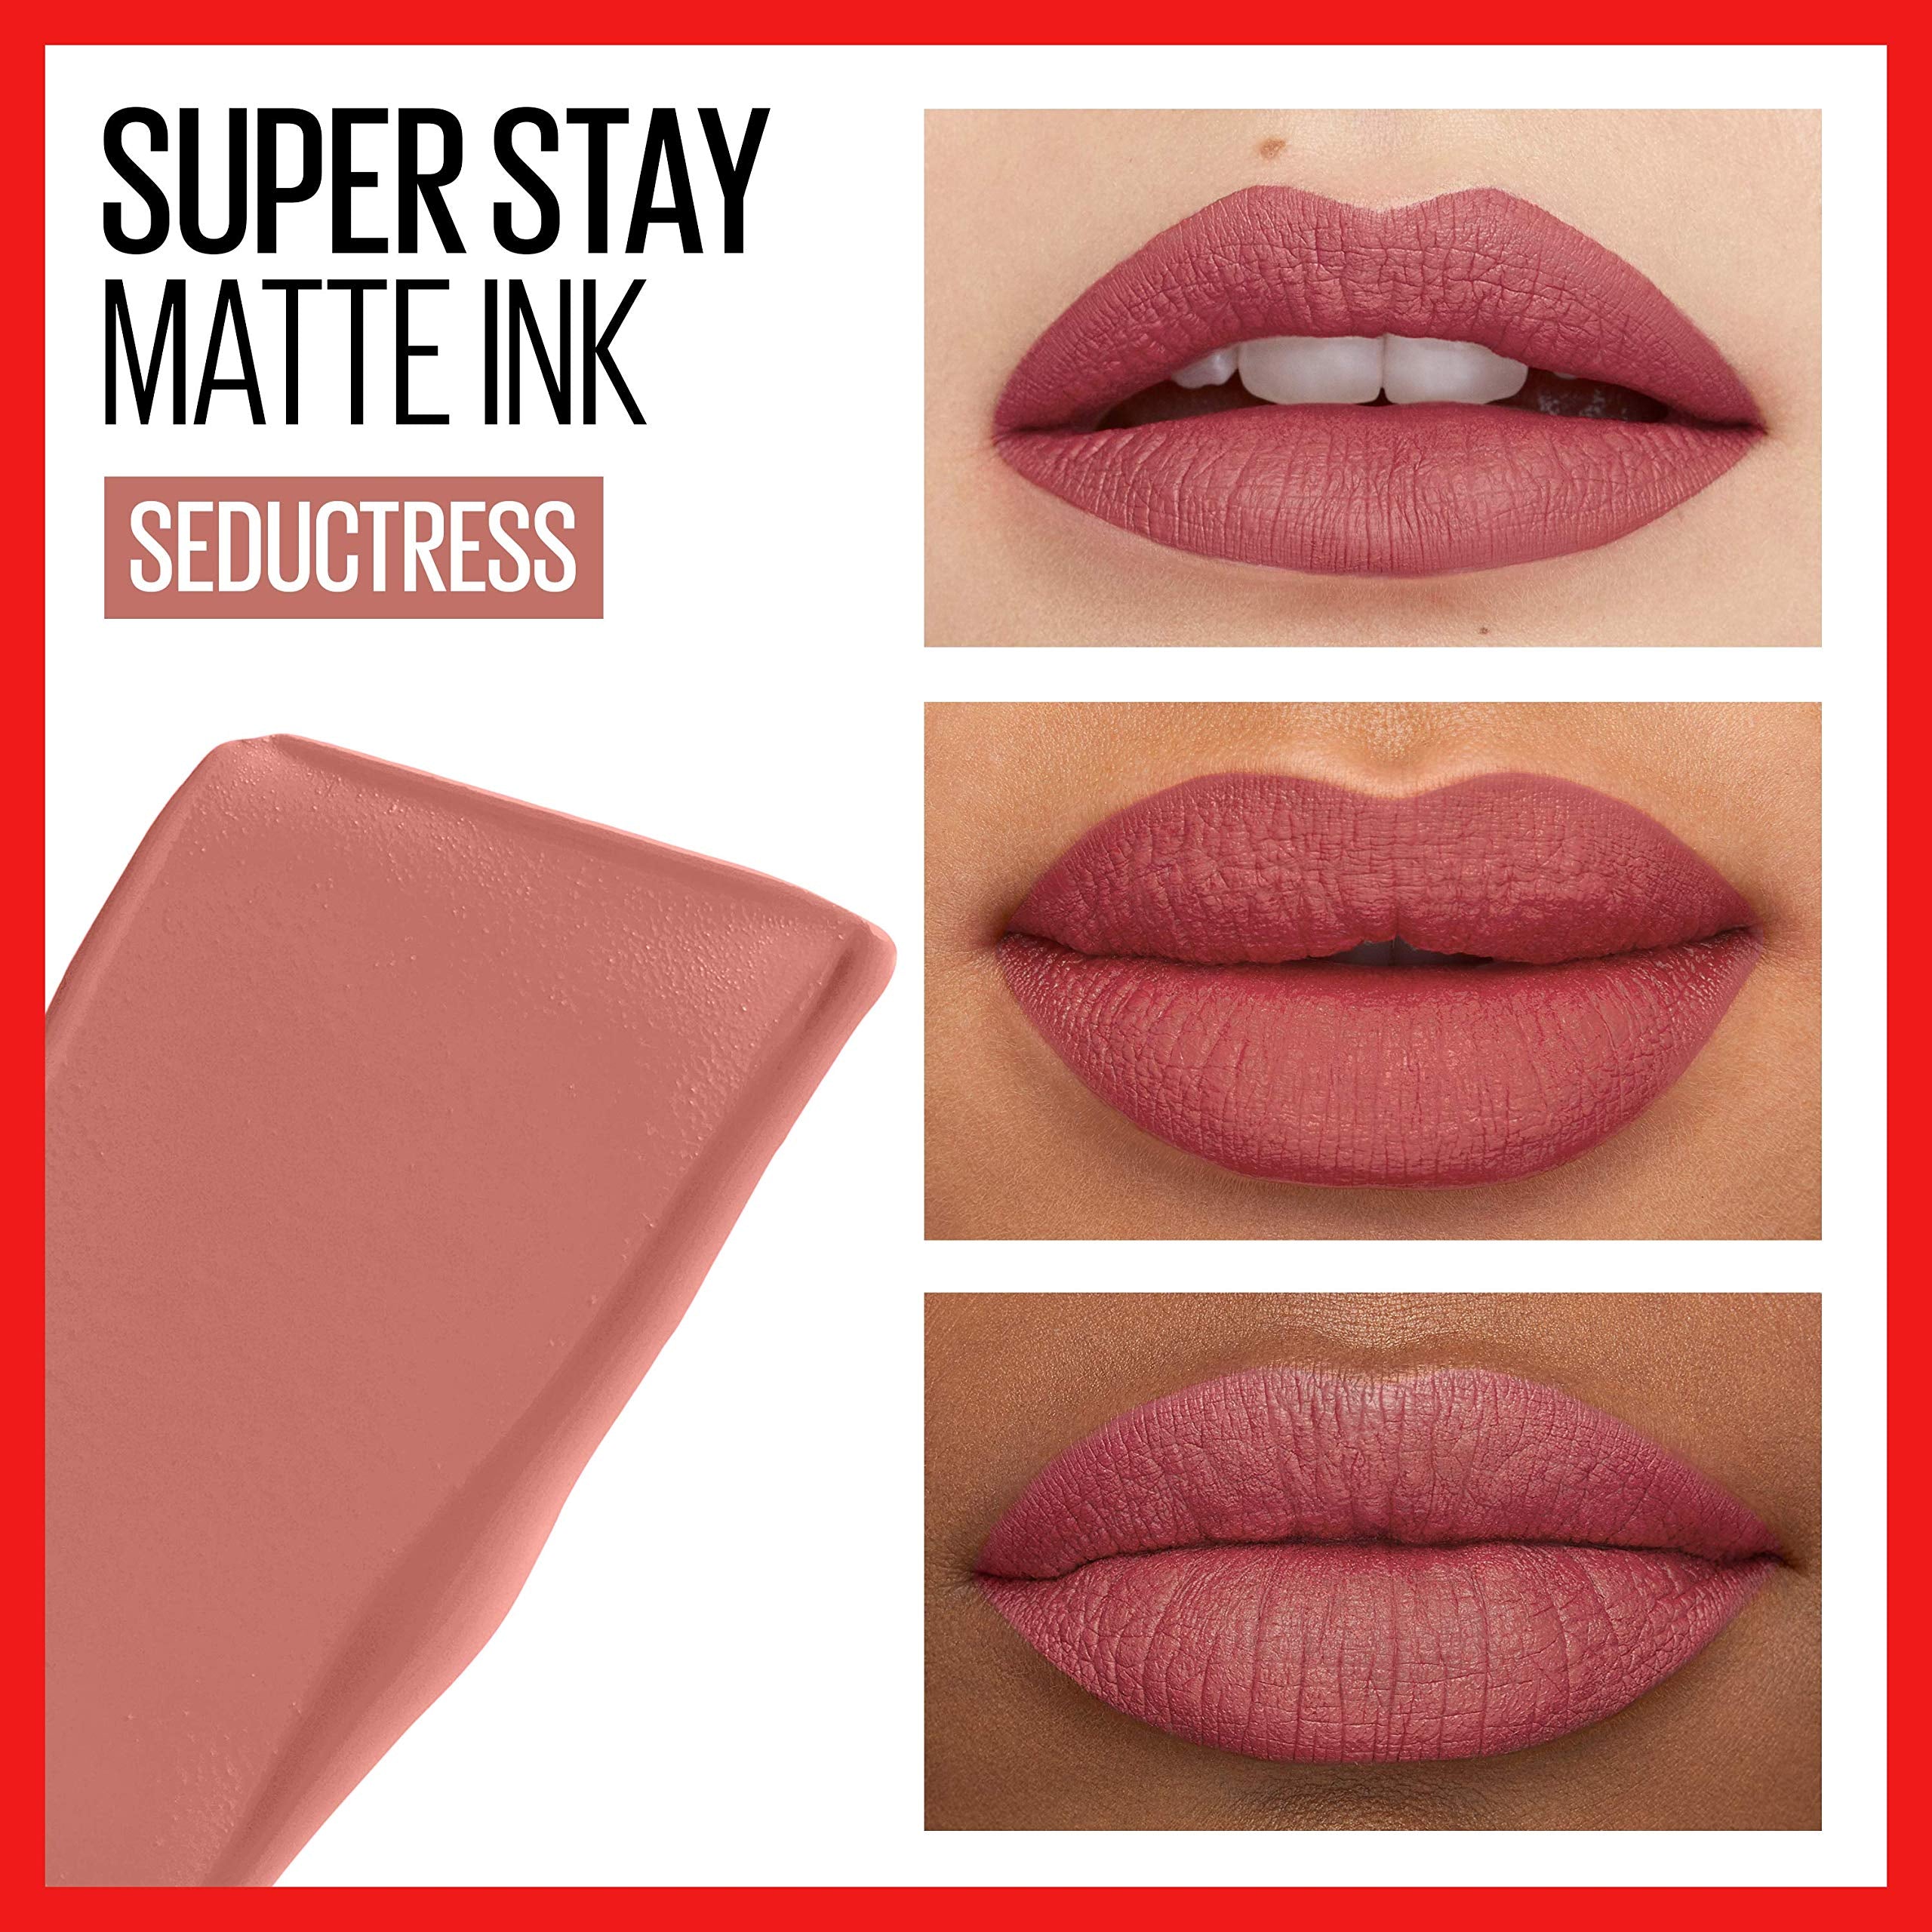 MAYBELLINE new york soper stay matte ink liquid lip color transfer proof up to 16 H wear بكك احمر الشفاه من ميبيلين الدرجات الاعلى مبيعاً